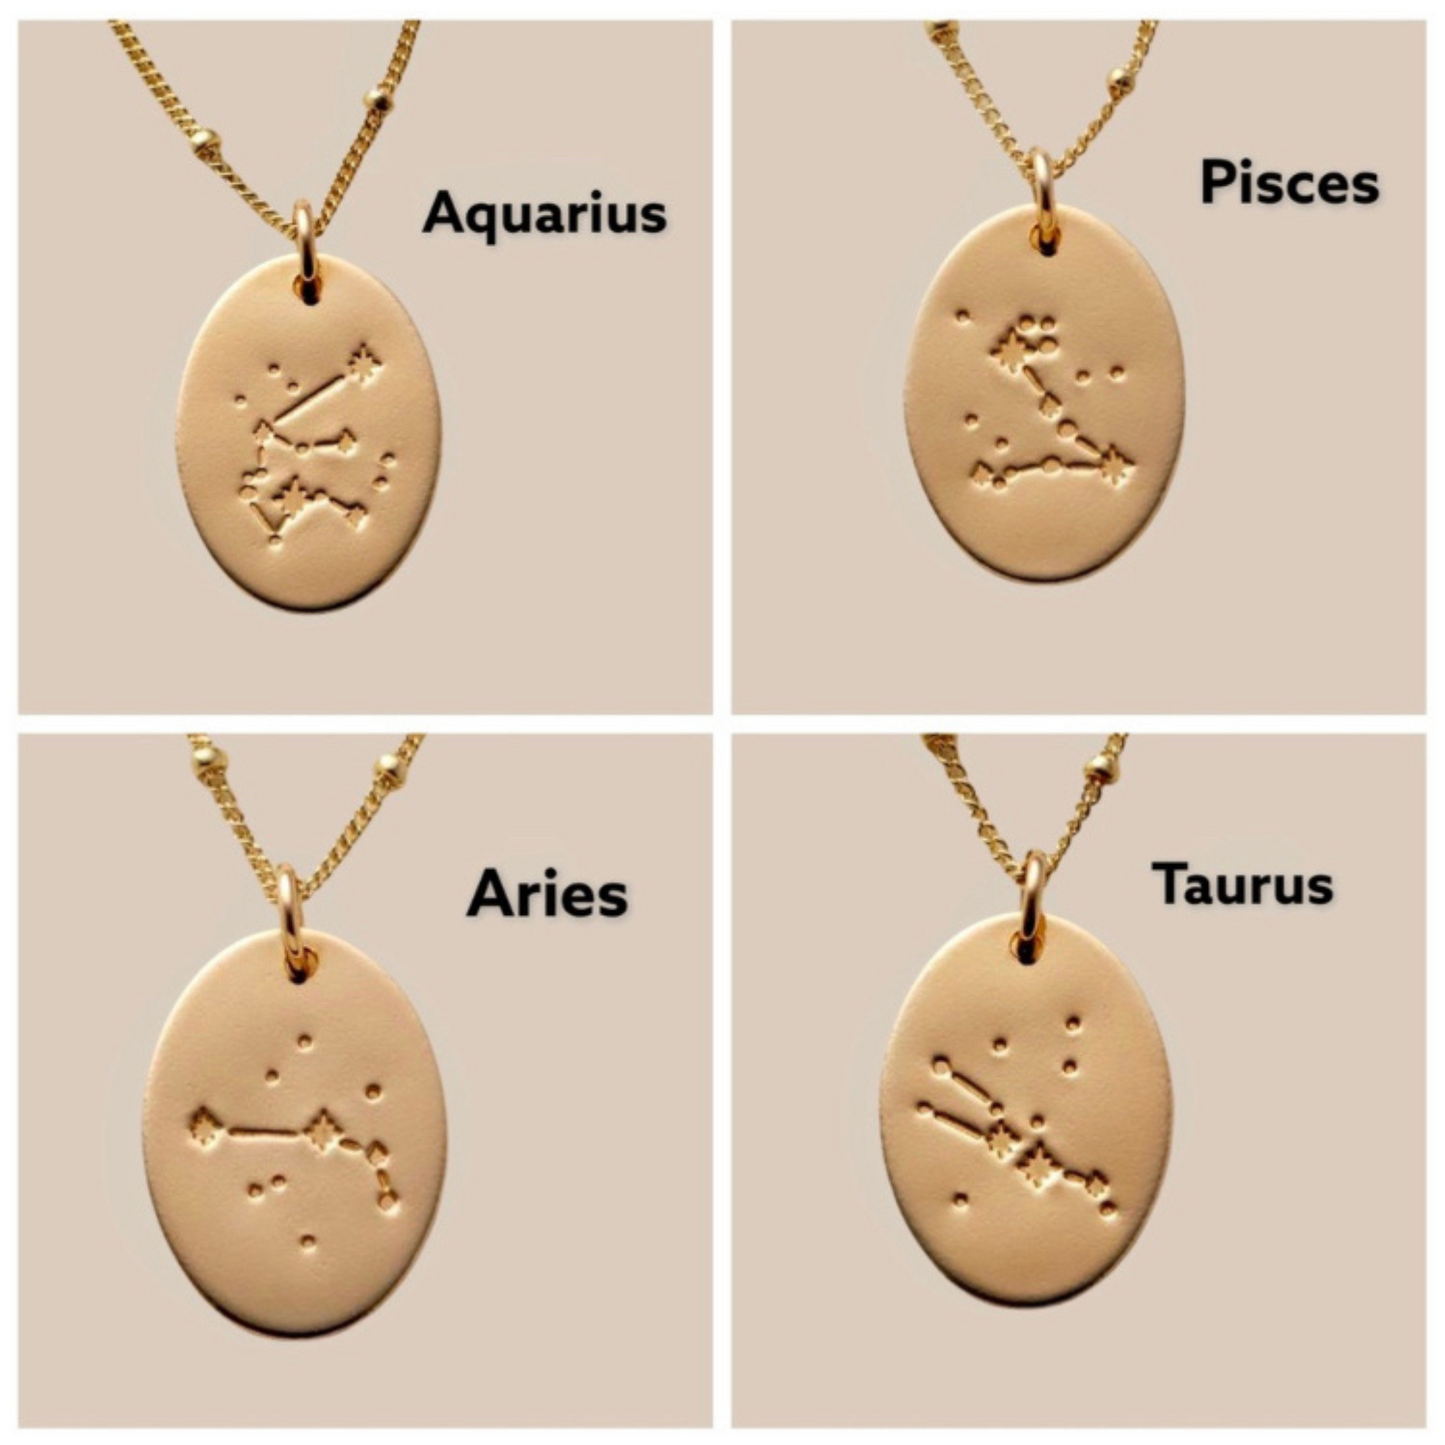 Virgo Constellation Zodiac Necklaces